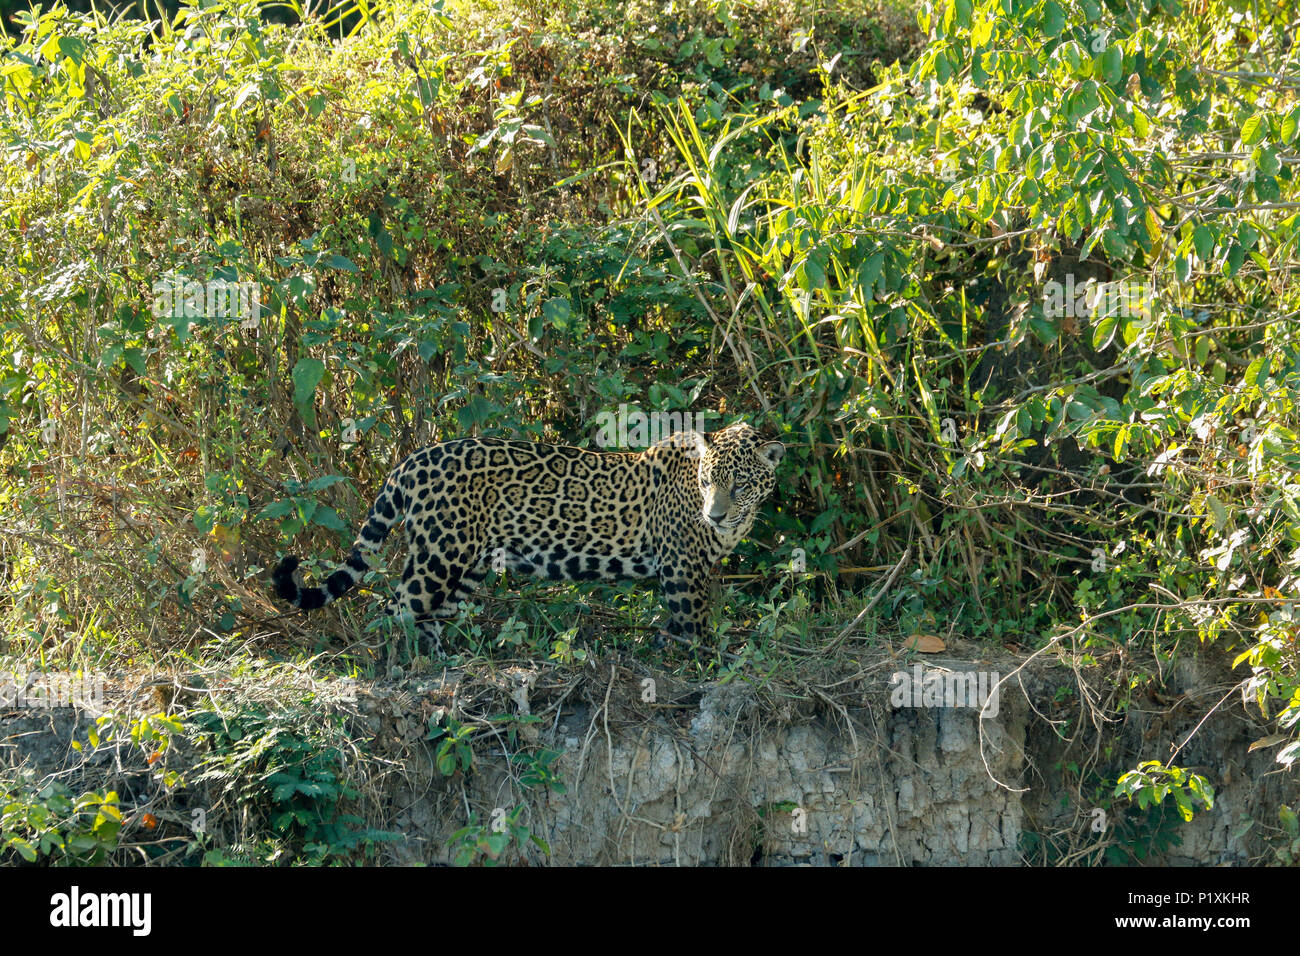 Région du Pantanal, Mato Grosso, Brésil, Amérique du Sud. Jaguar à chercher de la nourriture, l'air très ressemblant à la recherche de caïmans sur la rive. Banque D'Images